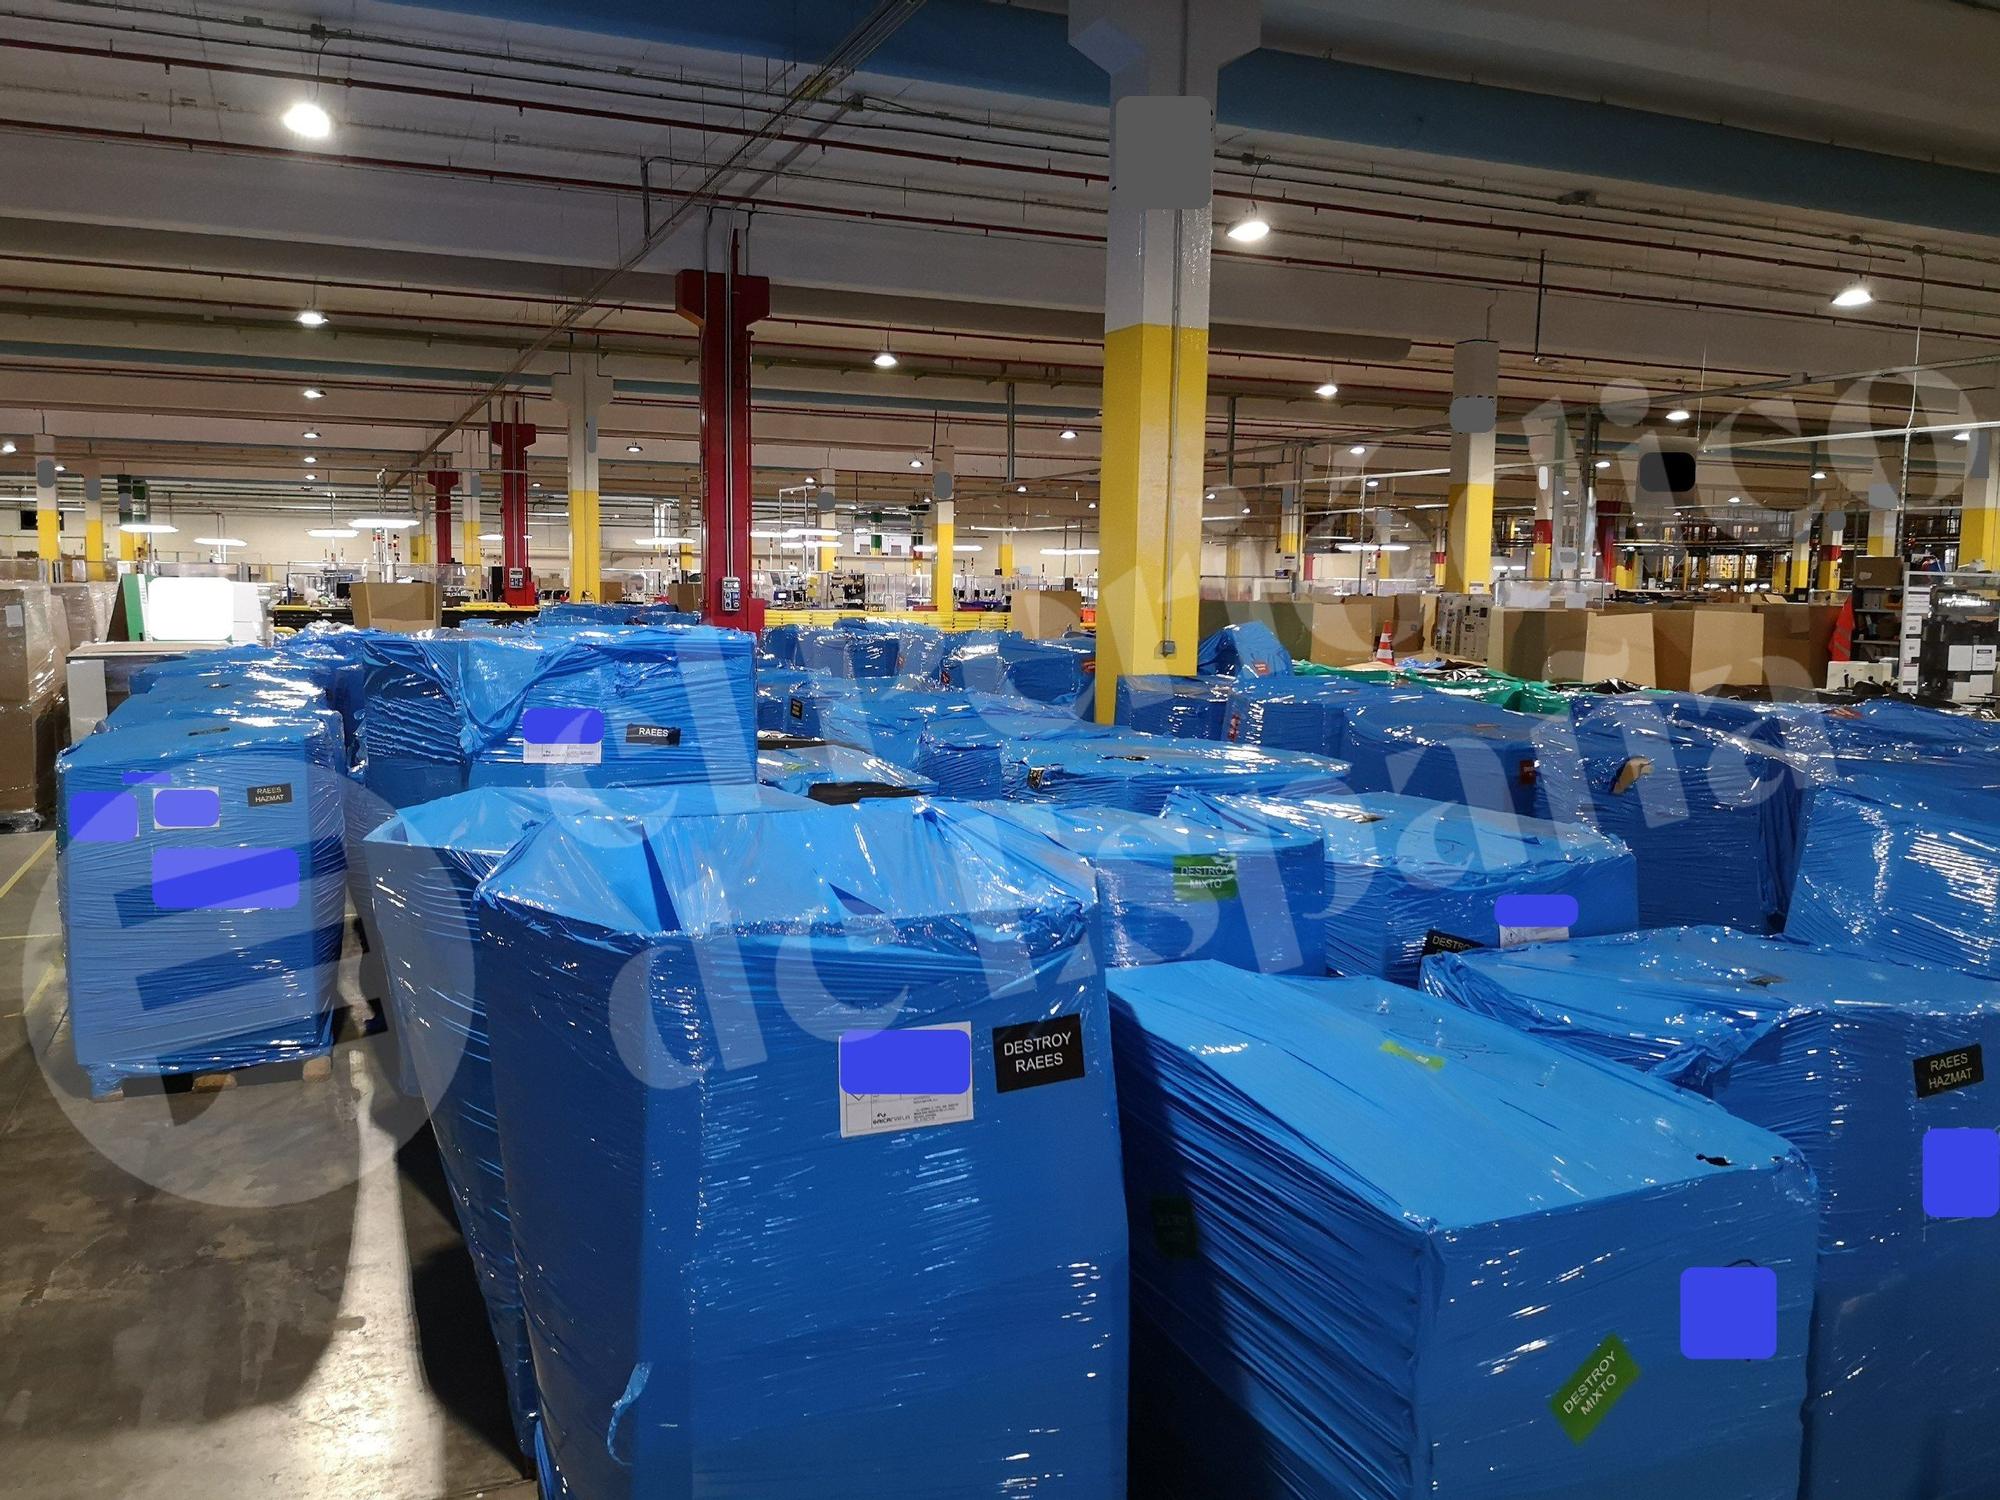 Cajas embaladas con productos de Amazon para destruir